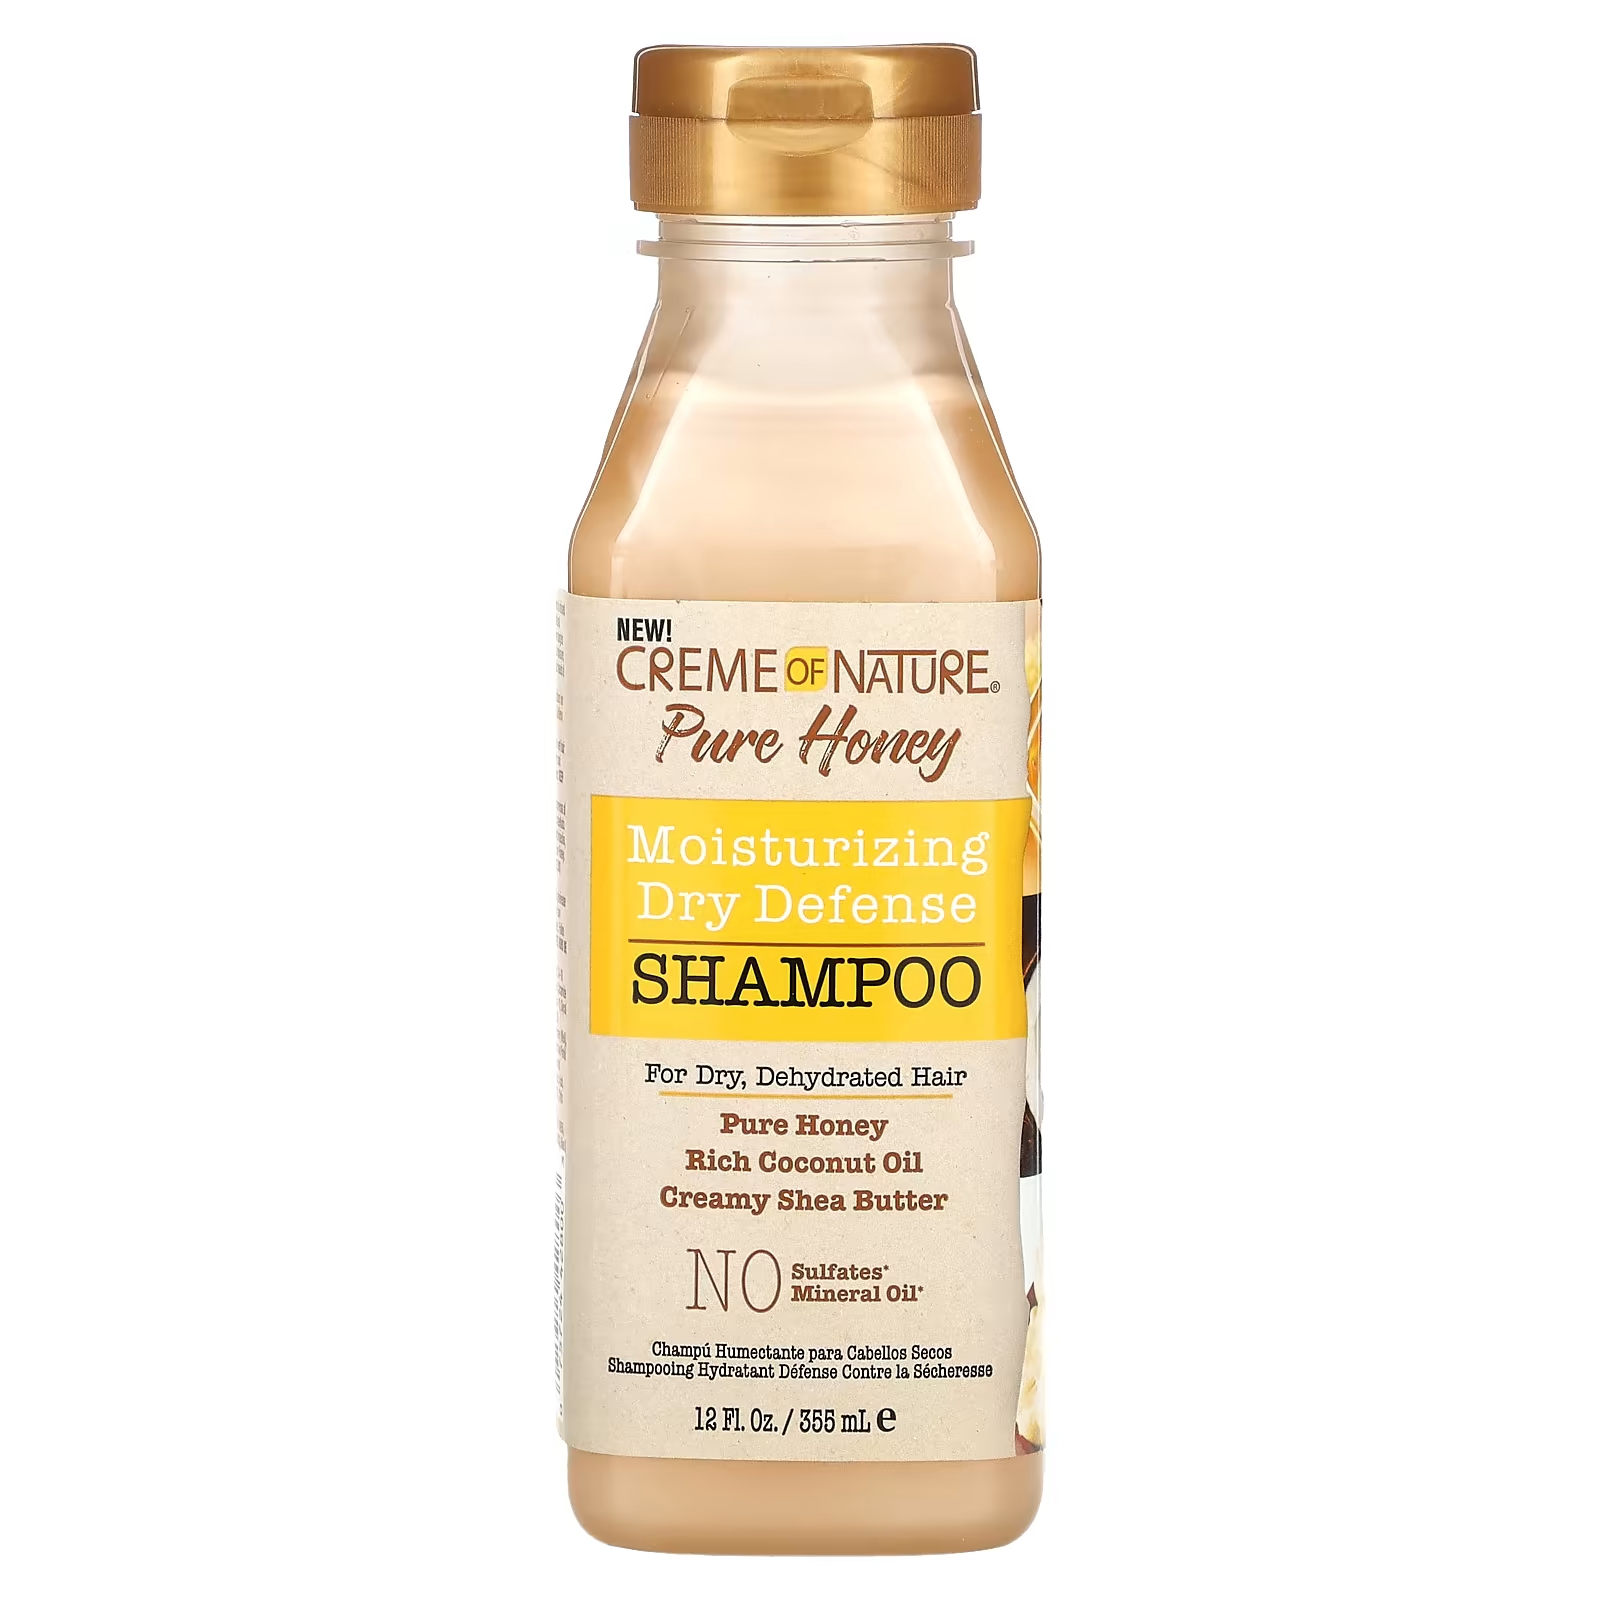 Creme Of Nature Pure Honey Увлажняющий сухой защитный шампунь для сухих обезвоженных волос, 12 жидких унций (355 мл)